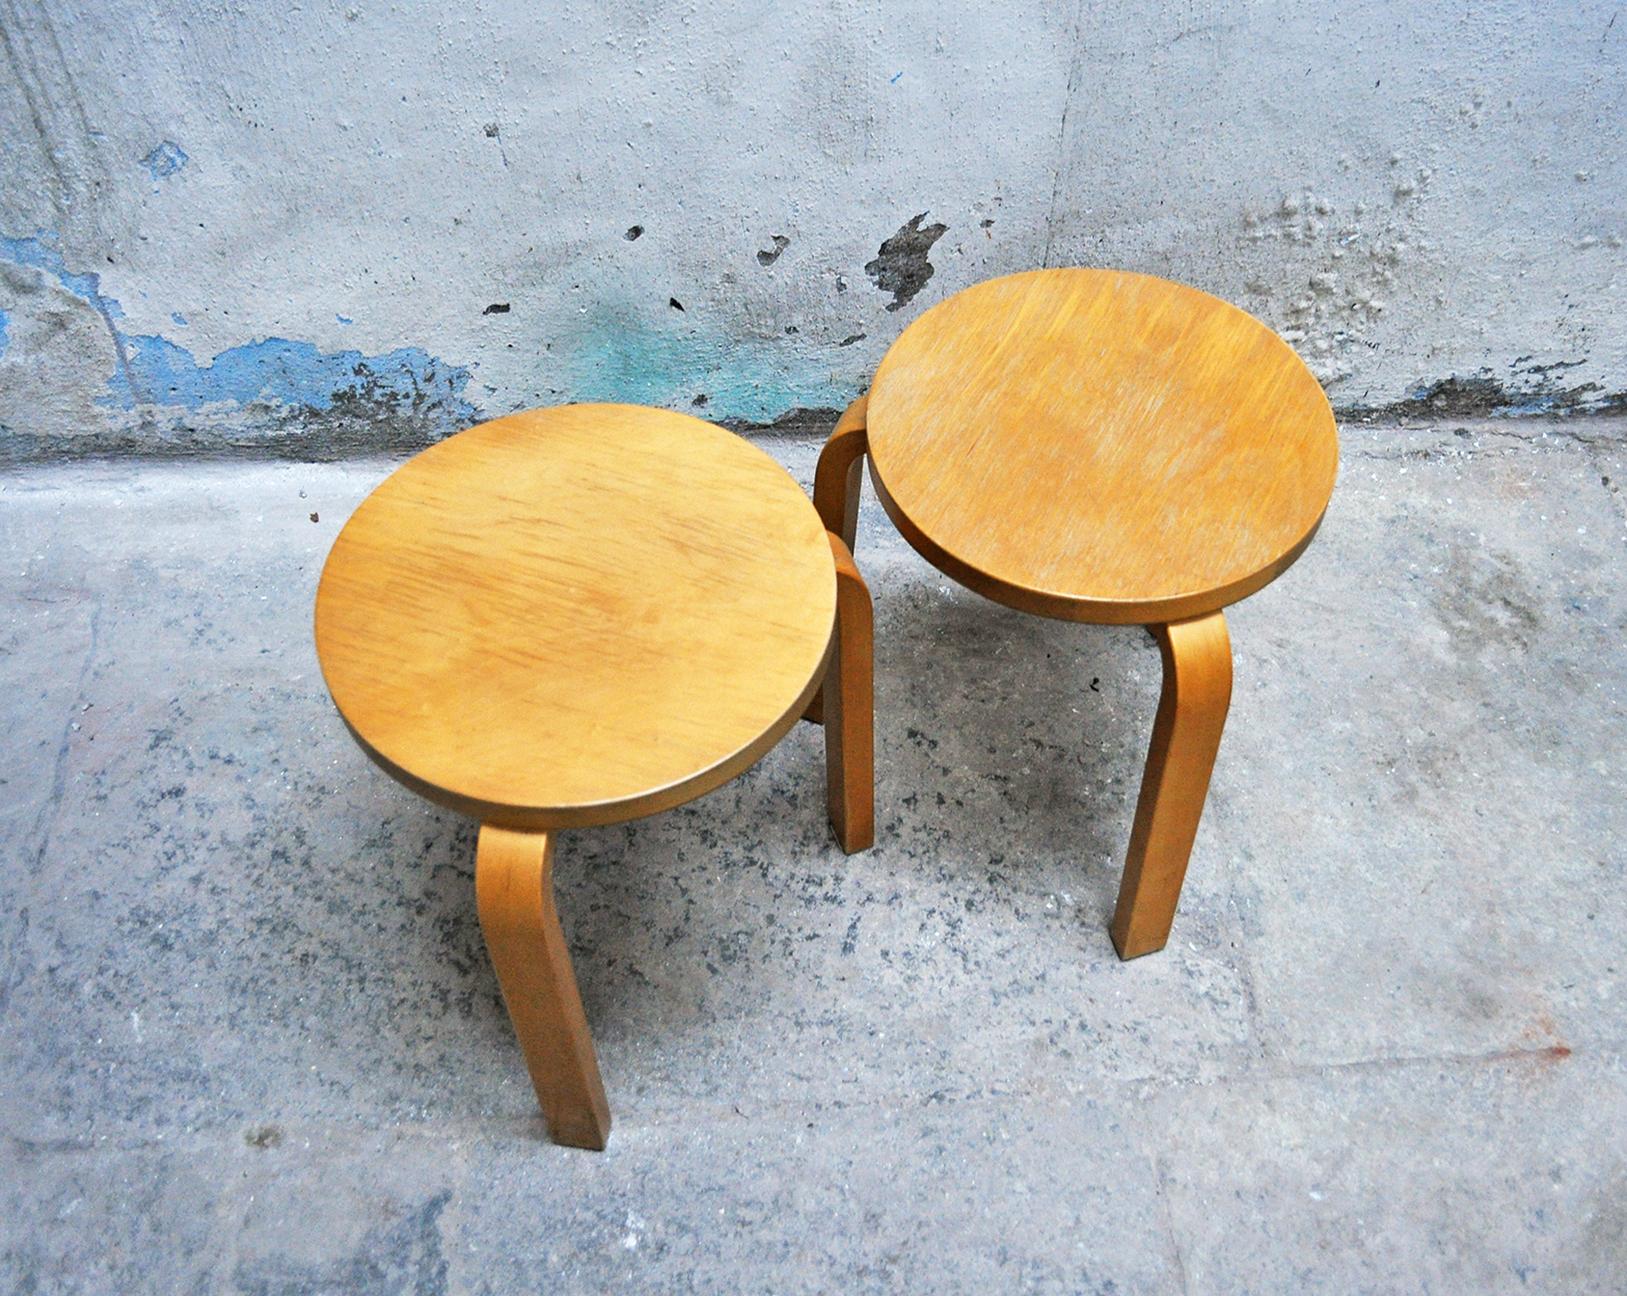 Pair of birch stools.
Stool model E60
Designer Alvar Aalto
Manufacturer Artek
1960s.